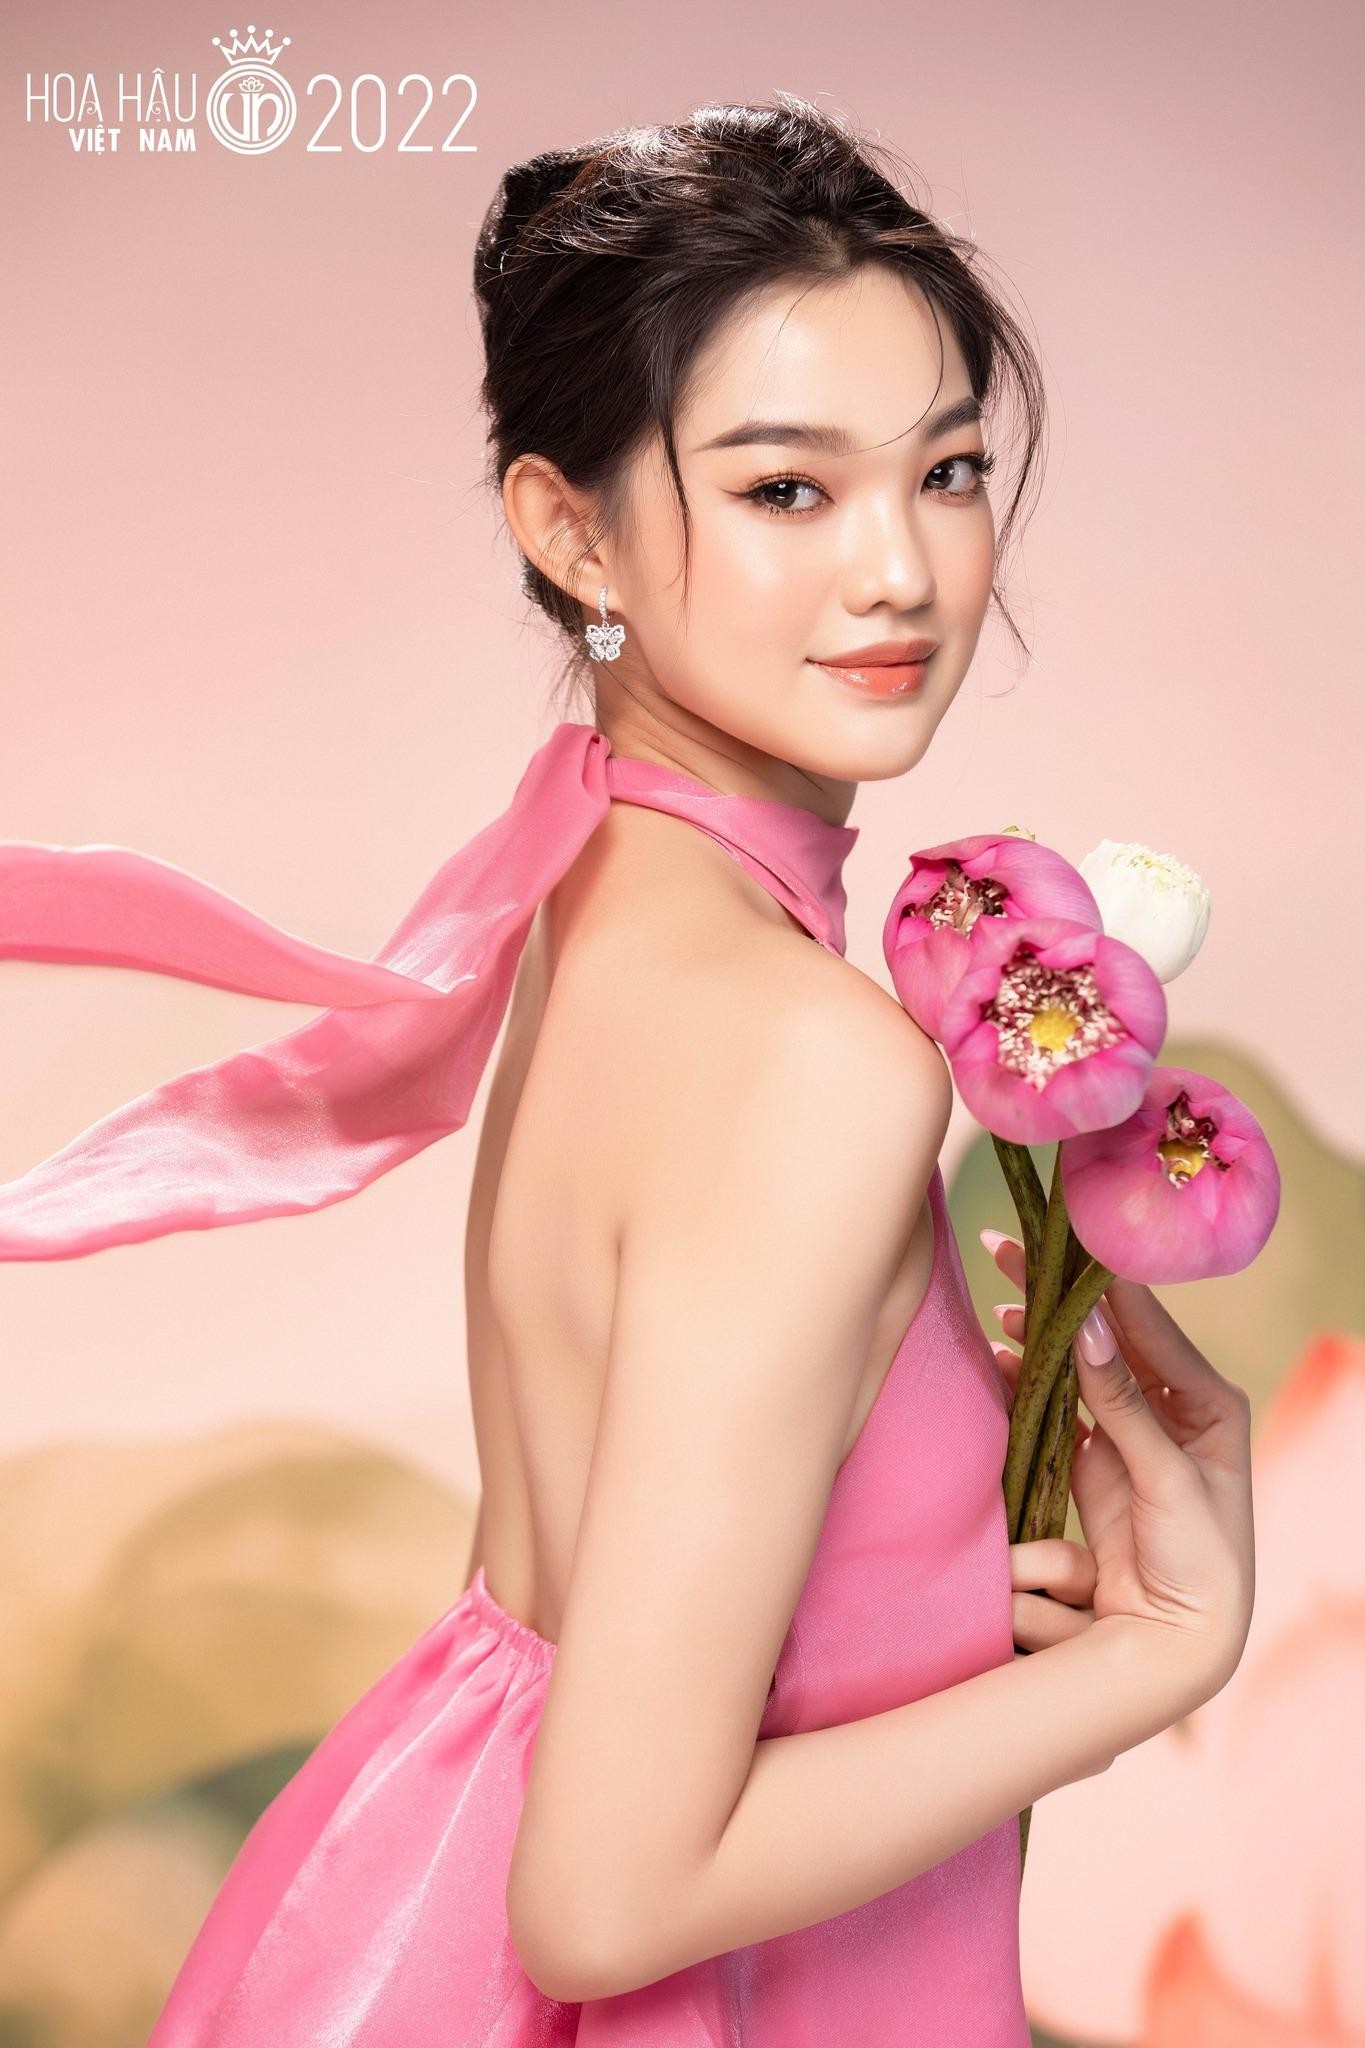 Nhan sắc cận của thí sinh Hoa hậu Việt Nam 2022 - Ảnh 1.